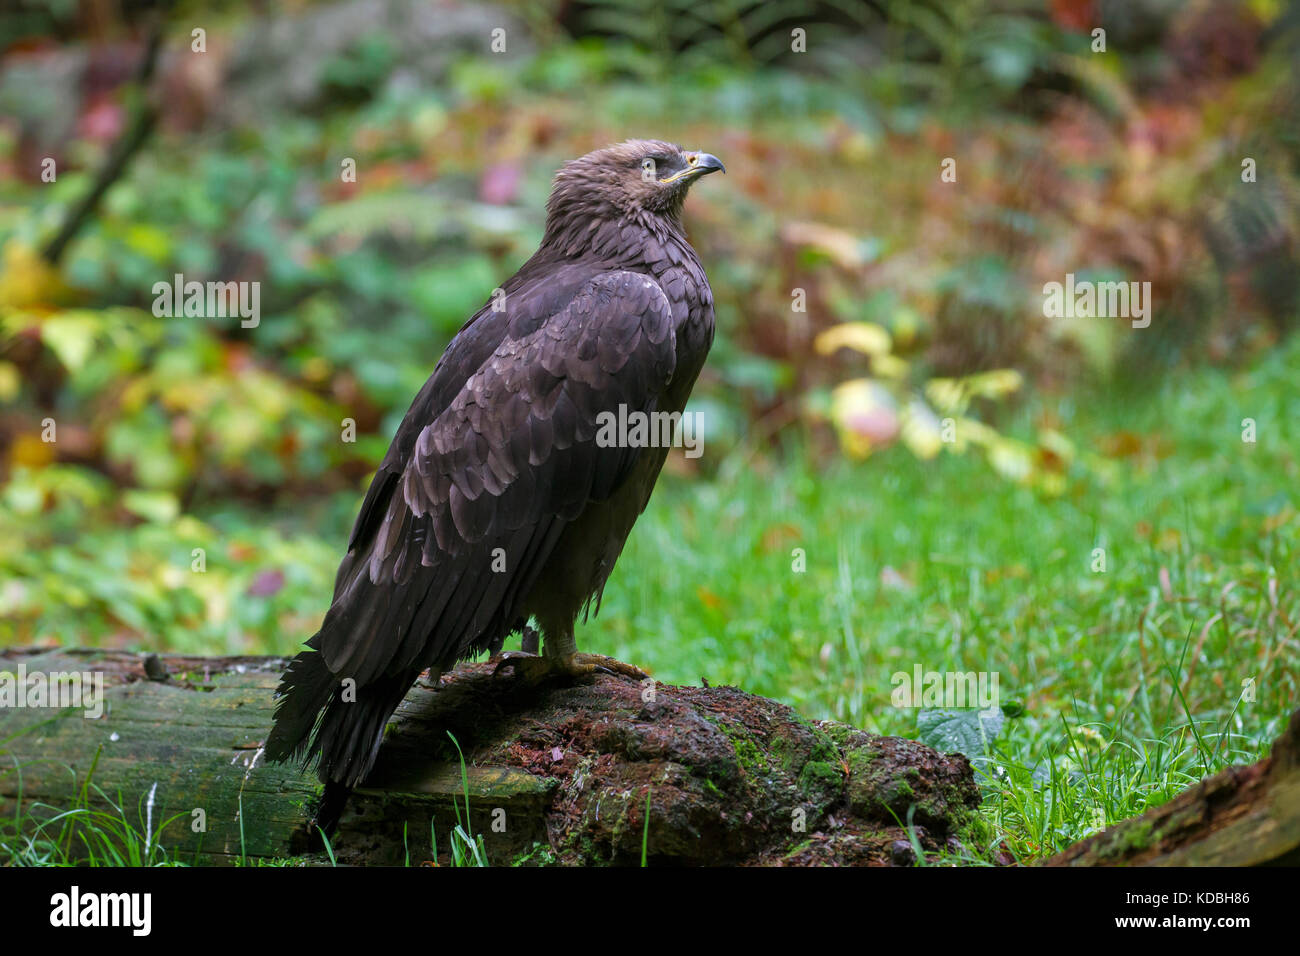 Lesser spotted (Aquila clanga pomarina / Aquila pomarina) per gli uccelli migratori di preda nativa per l'Europa centrale e orientale Foto Stock